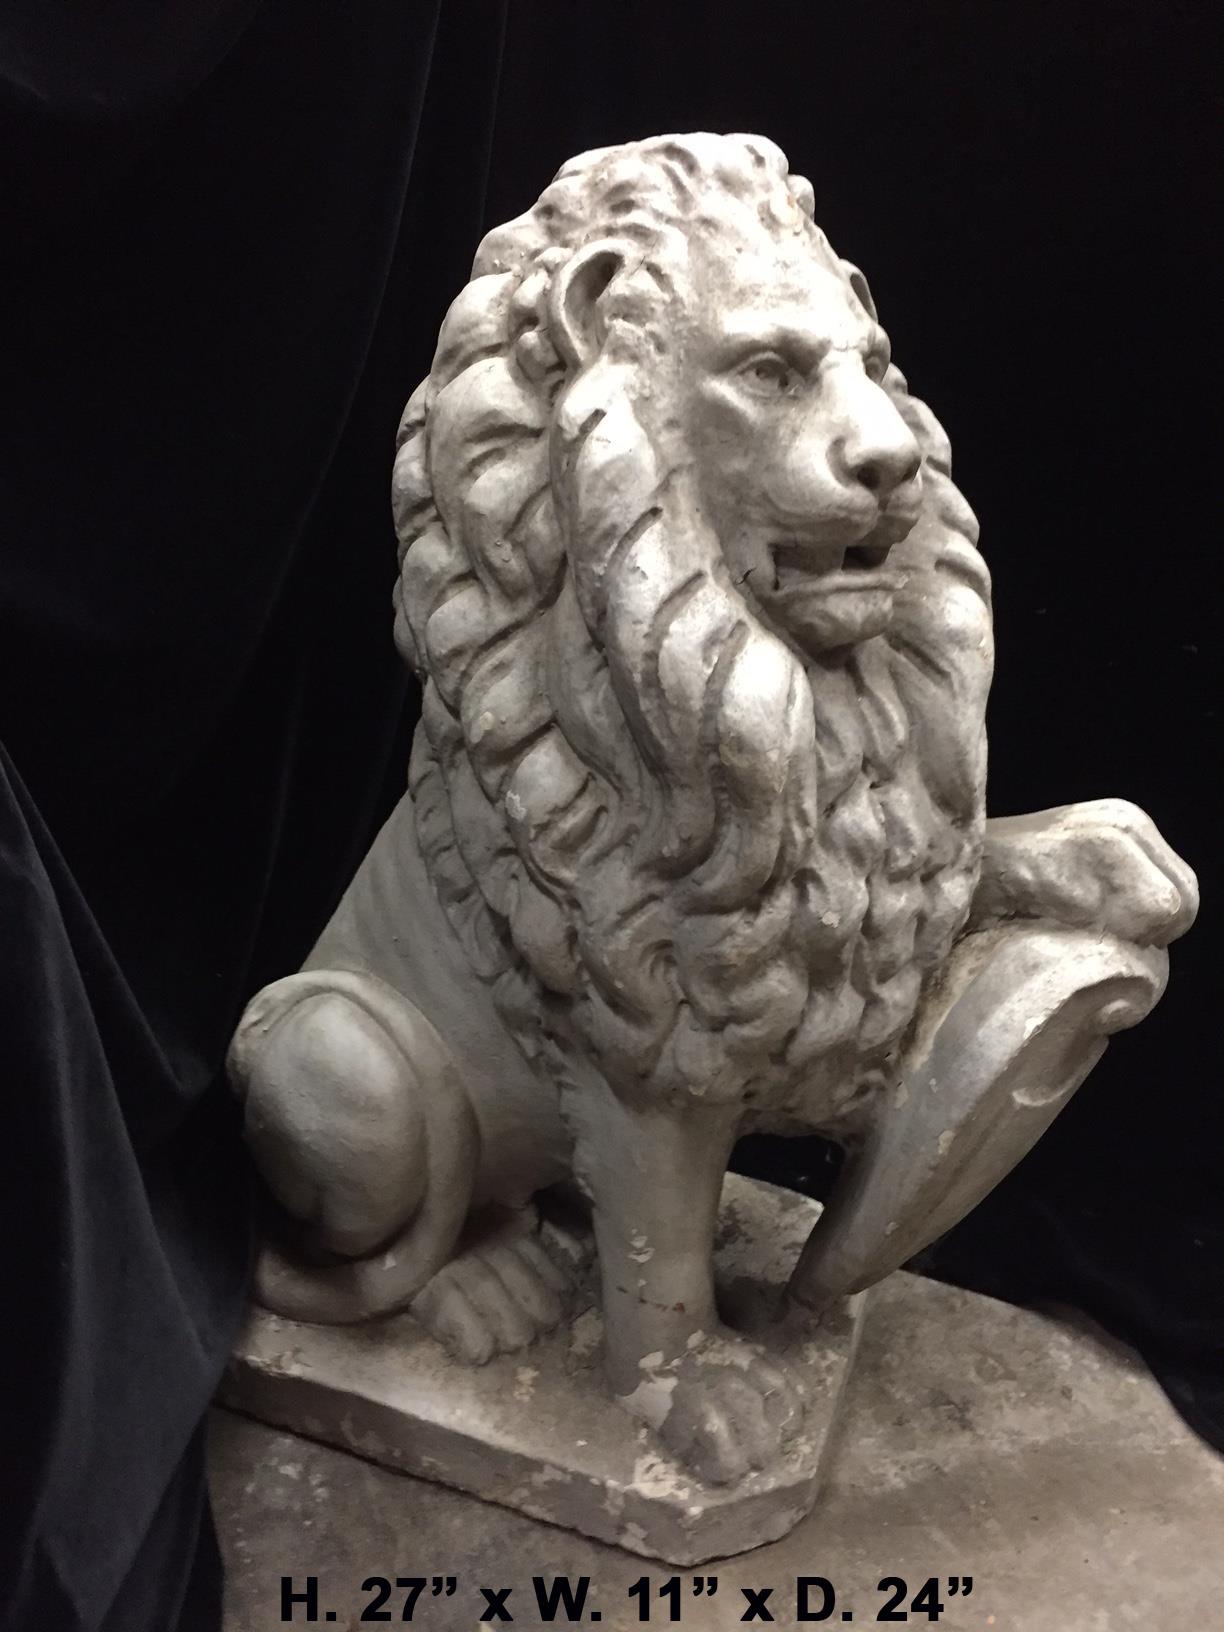 Magnifique lion en pierre moulée de style anglais avec bouclier,
20e siècle.
L'ensemble est joliment détaillé.
Peut être utilisé comme pièce de charme pour décorer le jardin.